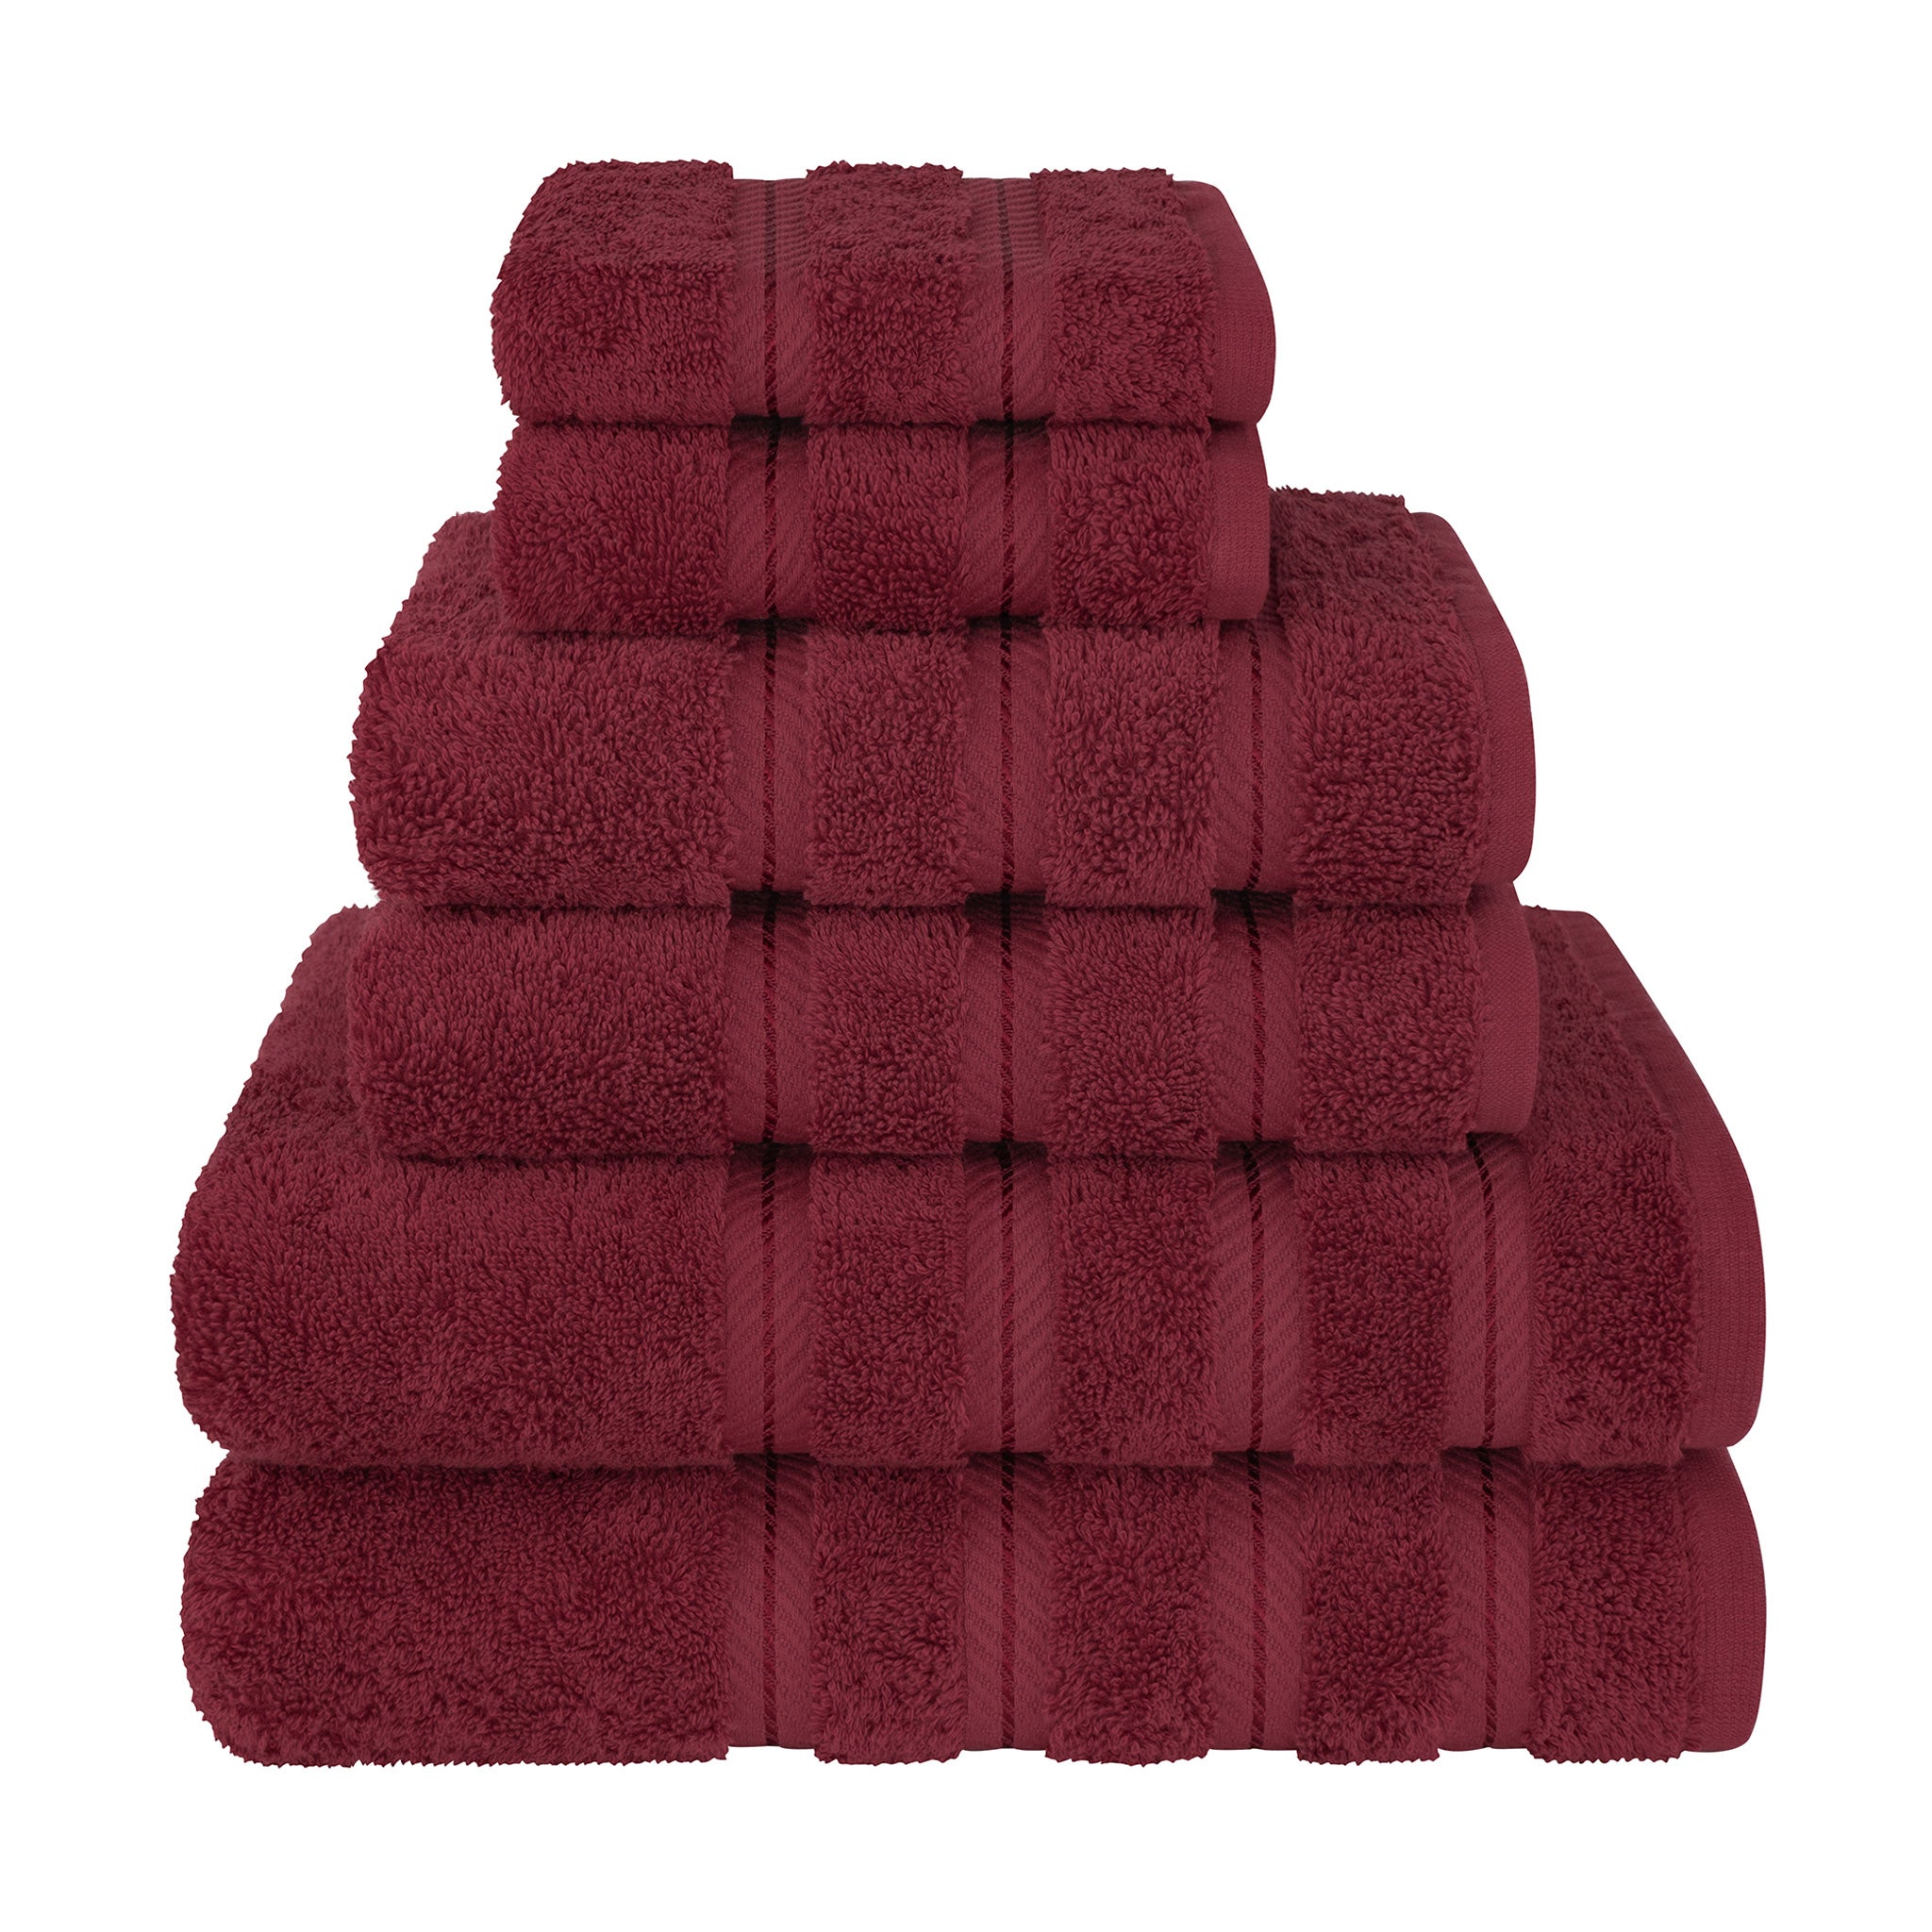 American Soft Linen 100% Turkish Cotton 6 Piece Towel Set Wholesale bordeaux-red-1